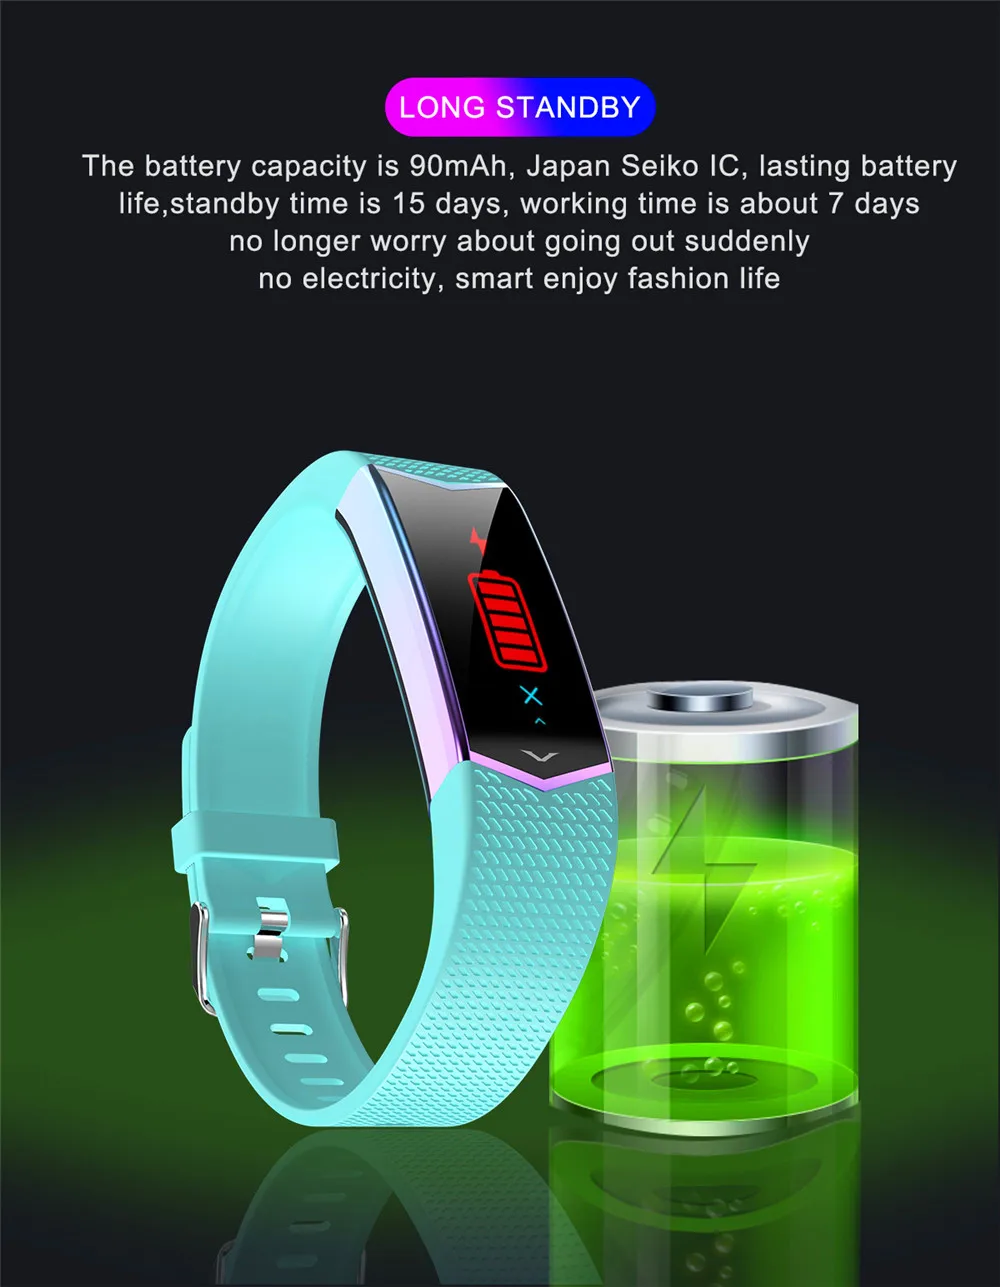 Умный Браслет фитнес-трекер Браслет кровяное давление монитор сердечного ритма с шагомером спортивный браслет для Android IOS Телефон